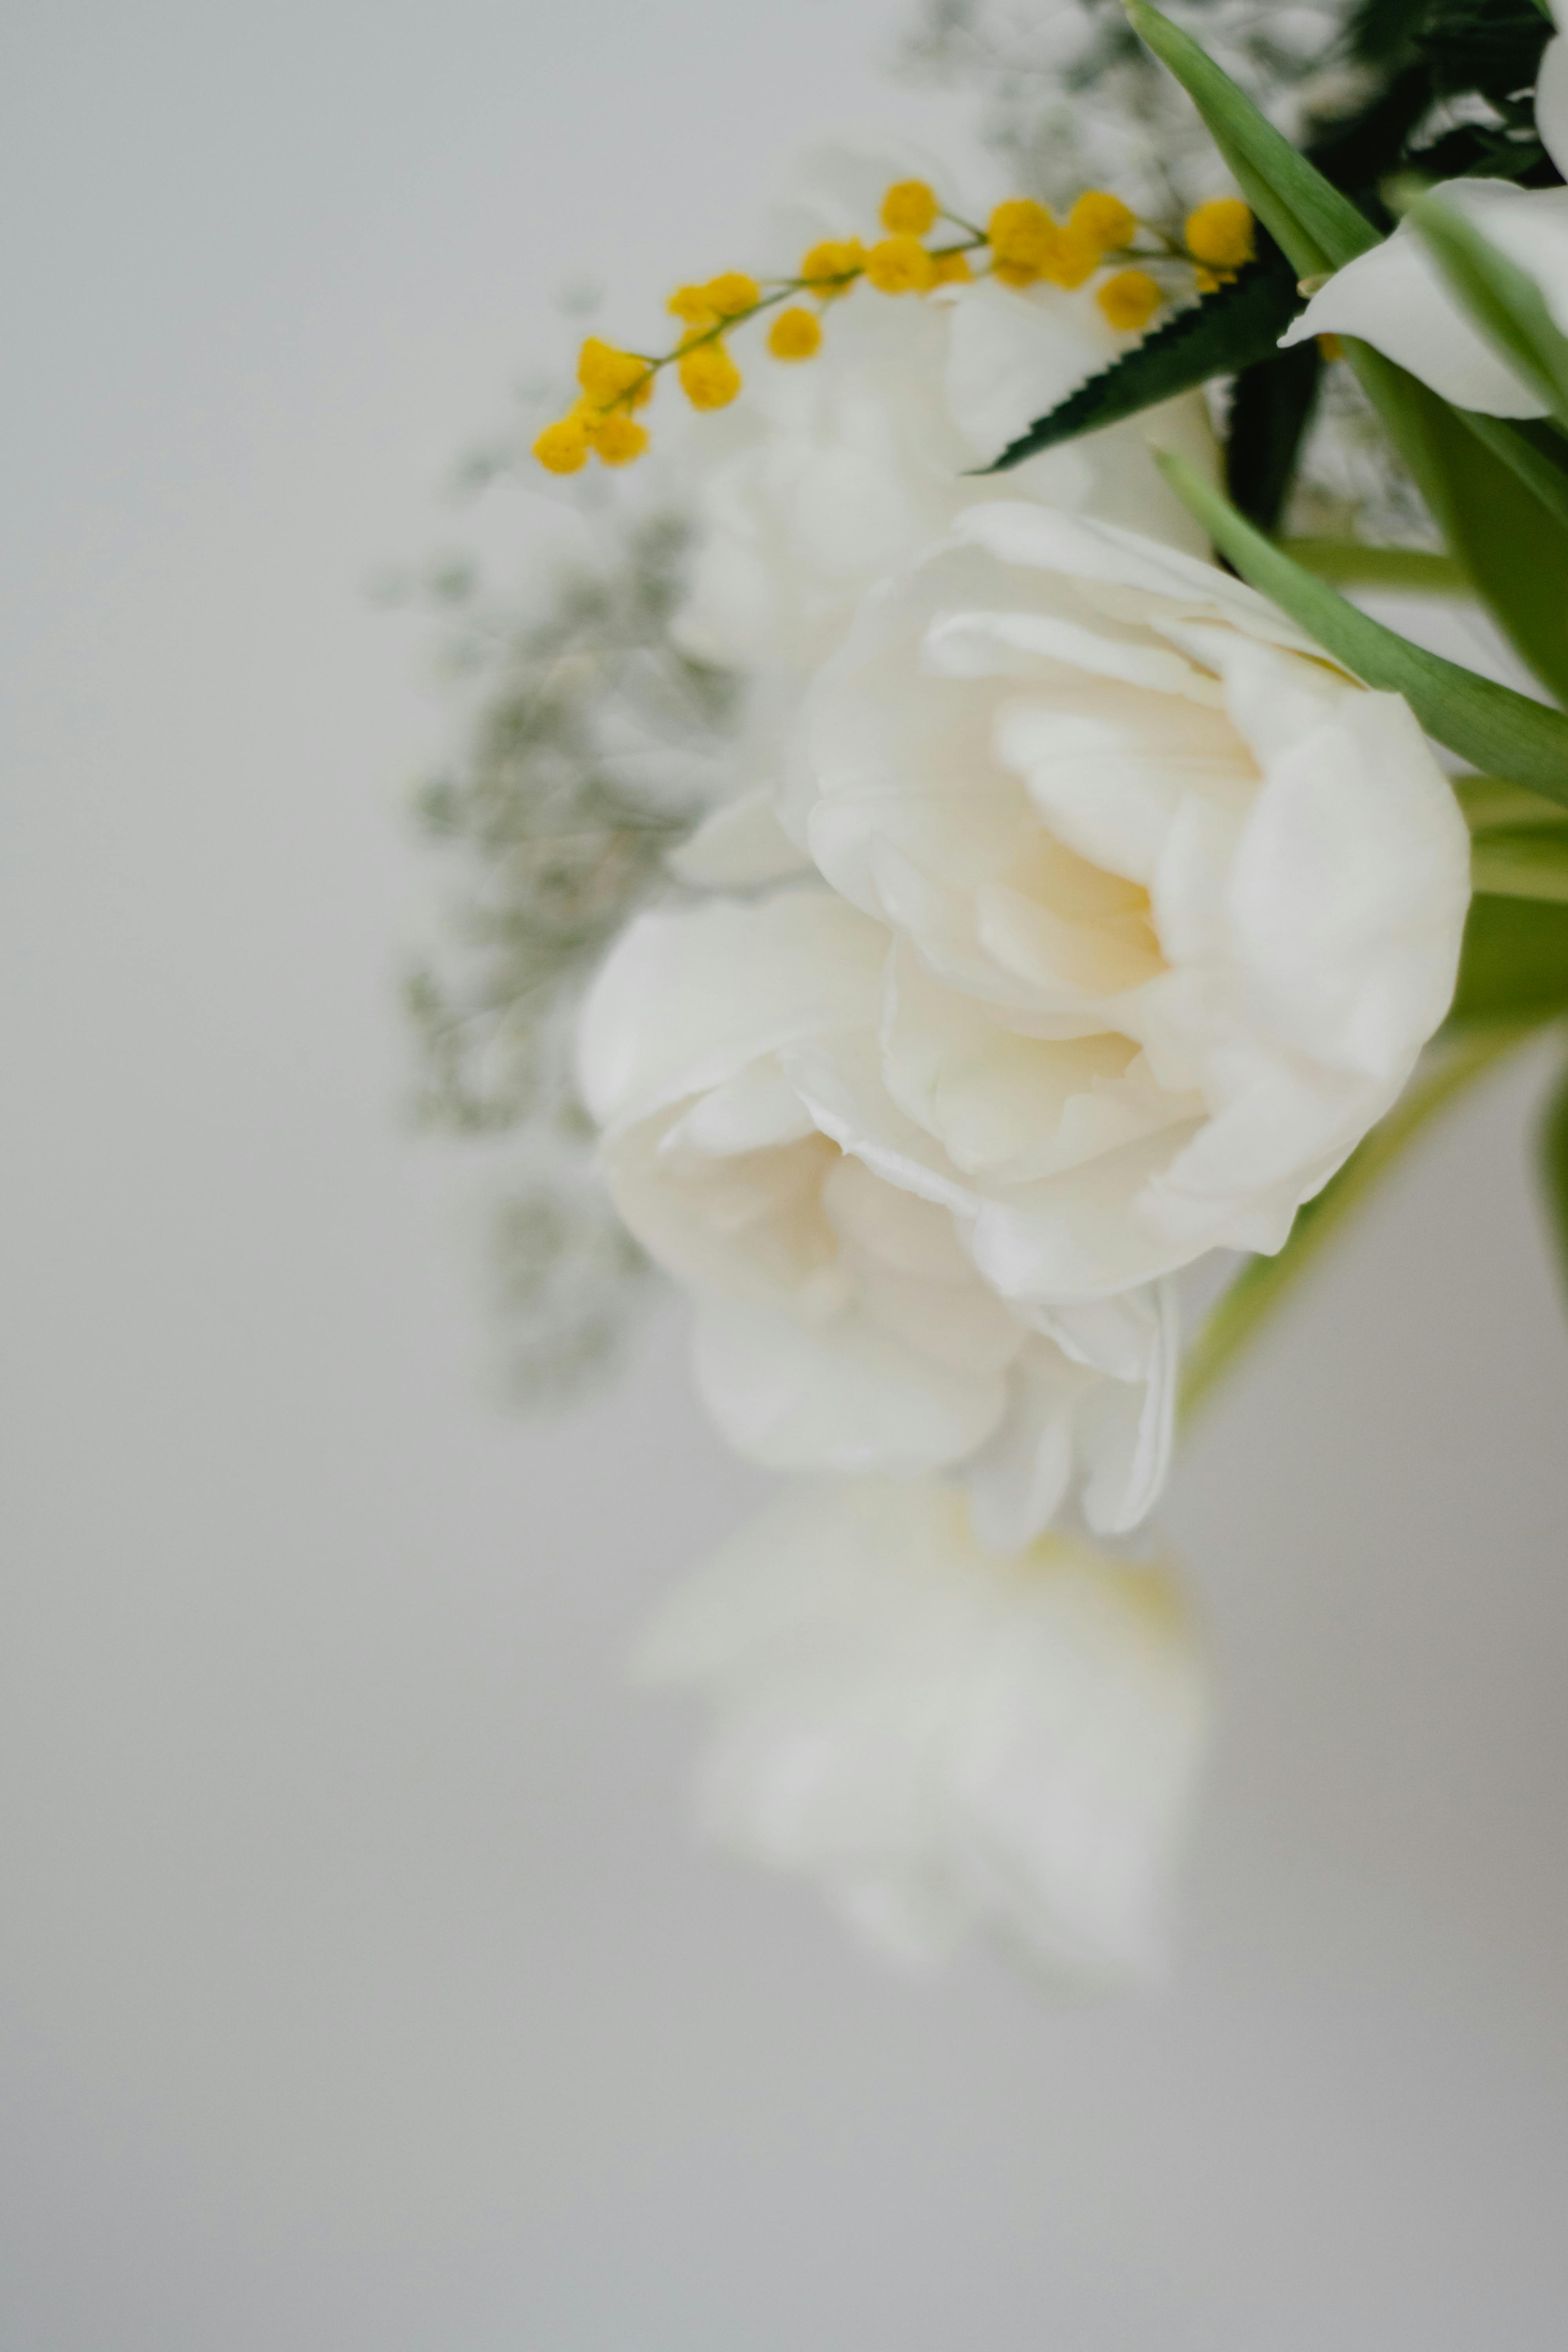 Sắc trắng tinh khiết và mơ màng của những bông hoa tulip trắng sẽ làm cho màn hình của bạn trở nên thật ấn tượng và sống động. Hãy ngắm nhìn một chút về nét thanh tú và thanh lịch của những bông hoa tulip trắng trên hình nền này.